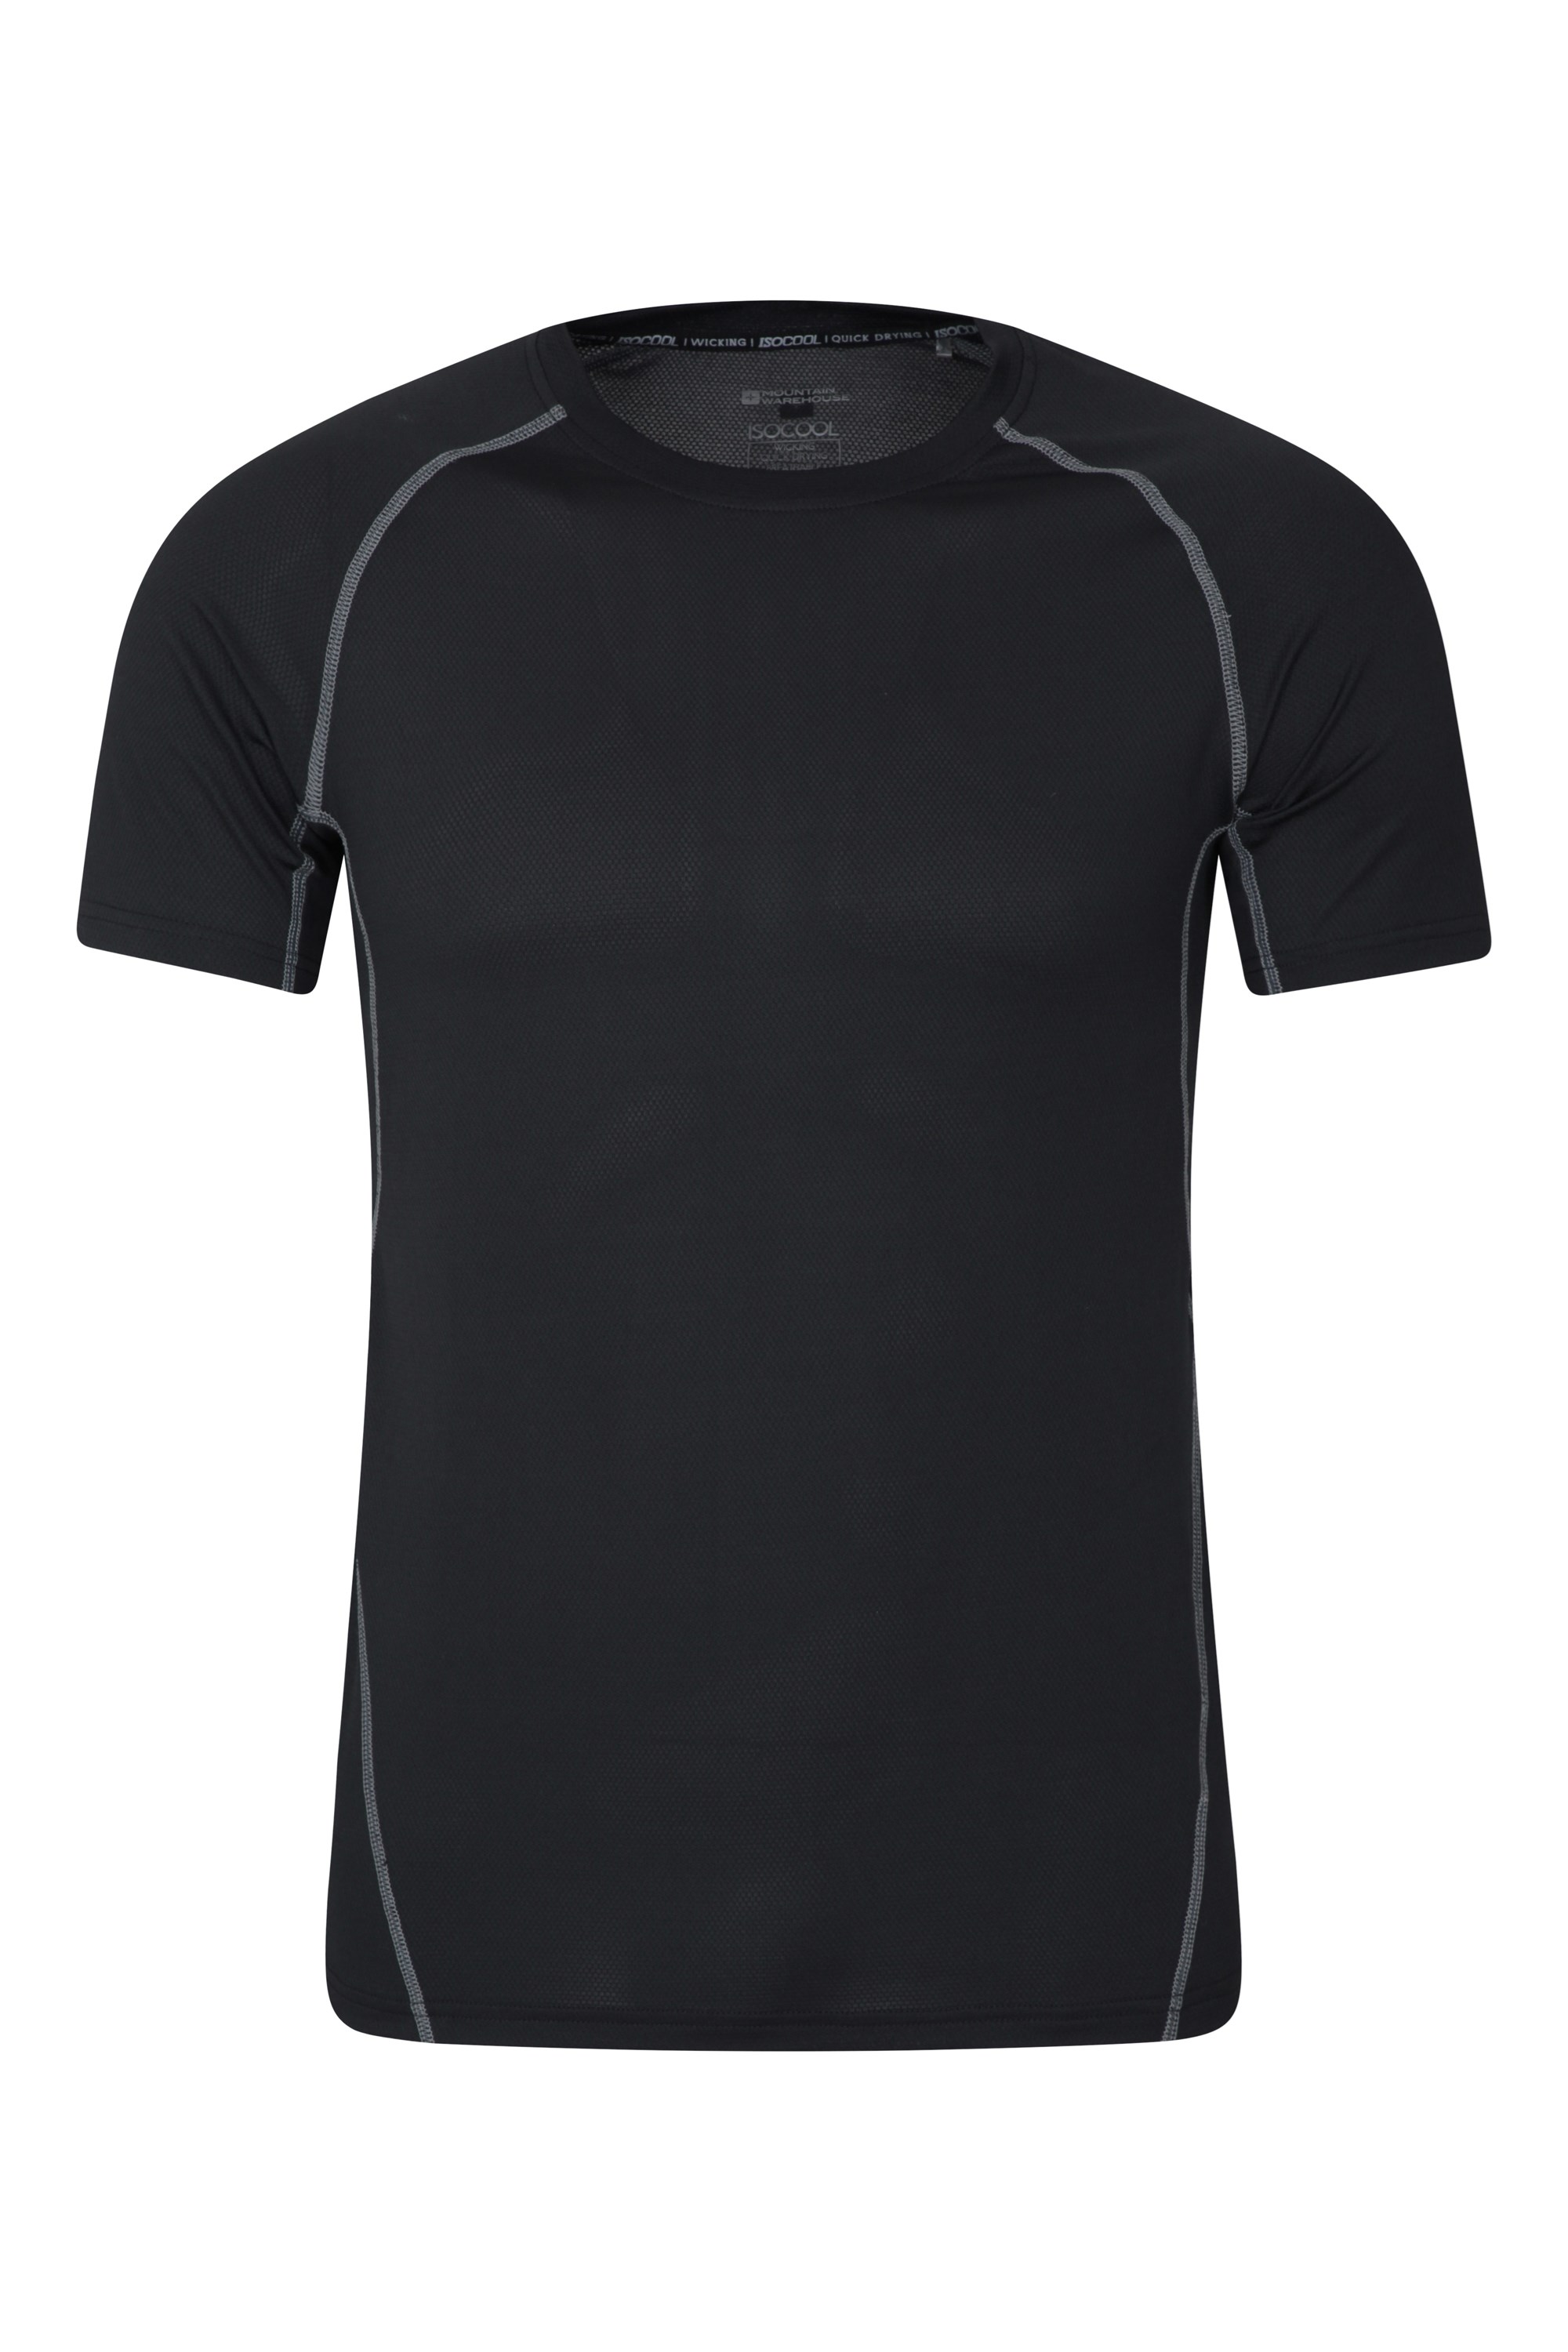 T-Shirt Alp Homme - Noir